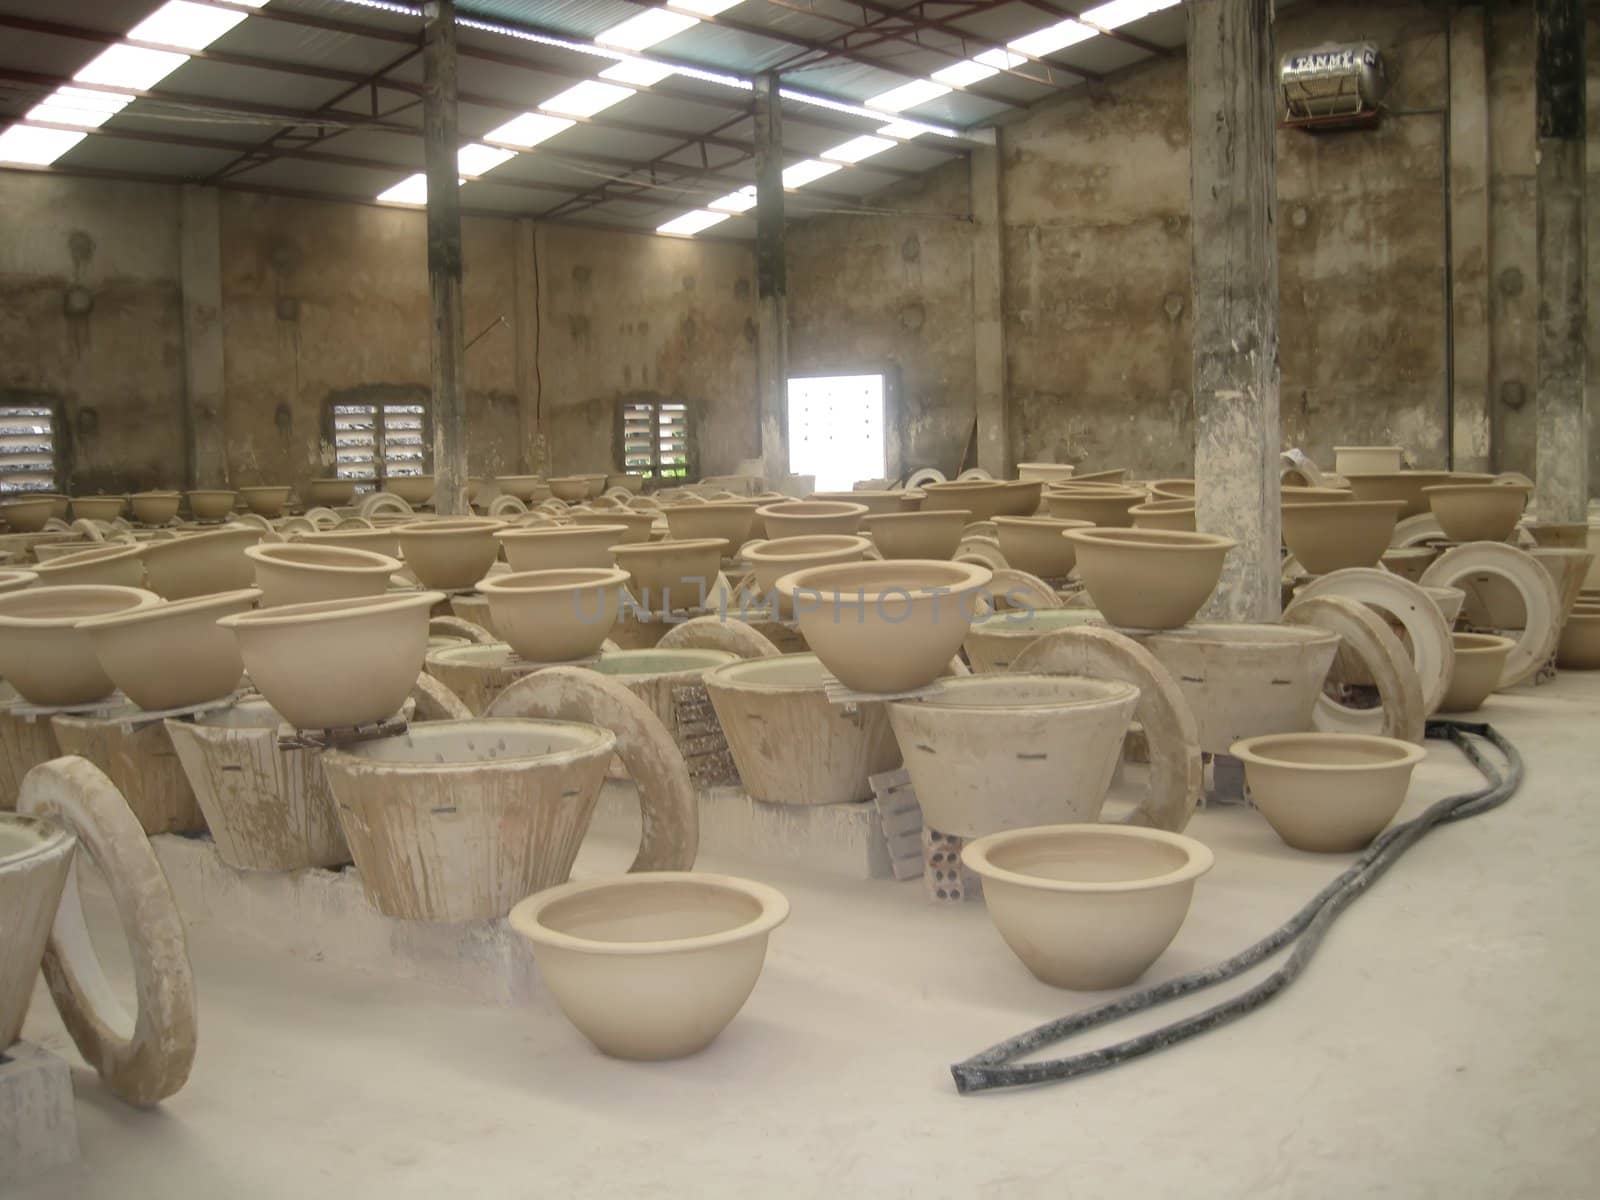 Ceramic Factory Ha Long city Vietnam 25 Octber 2008